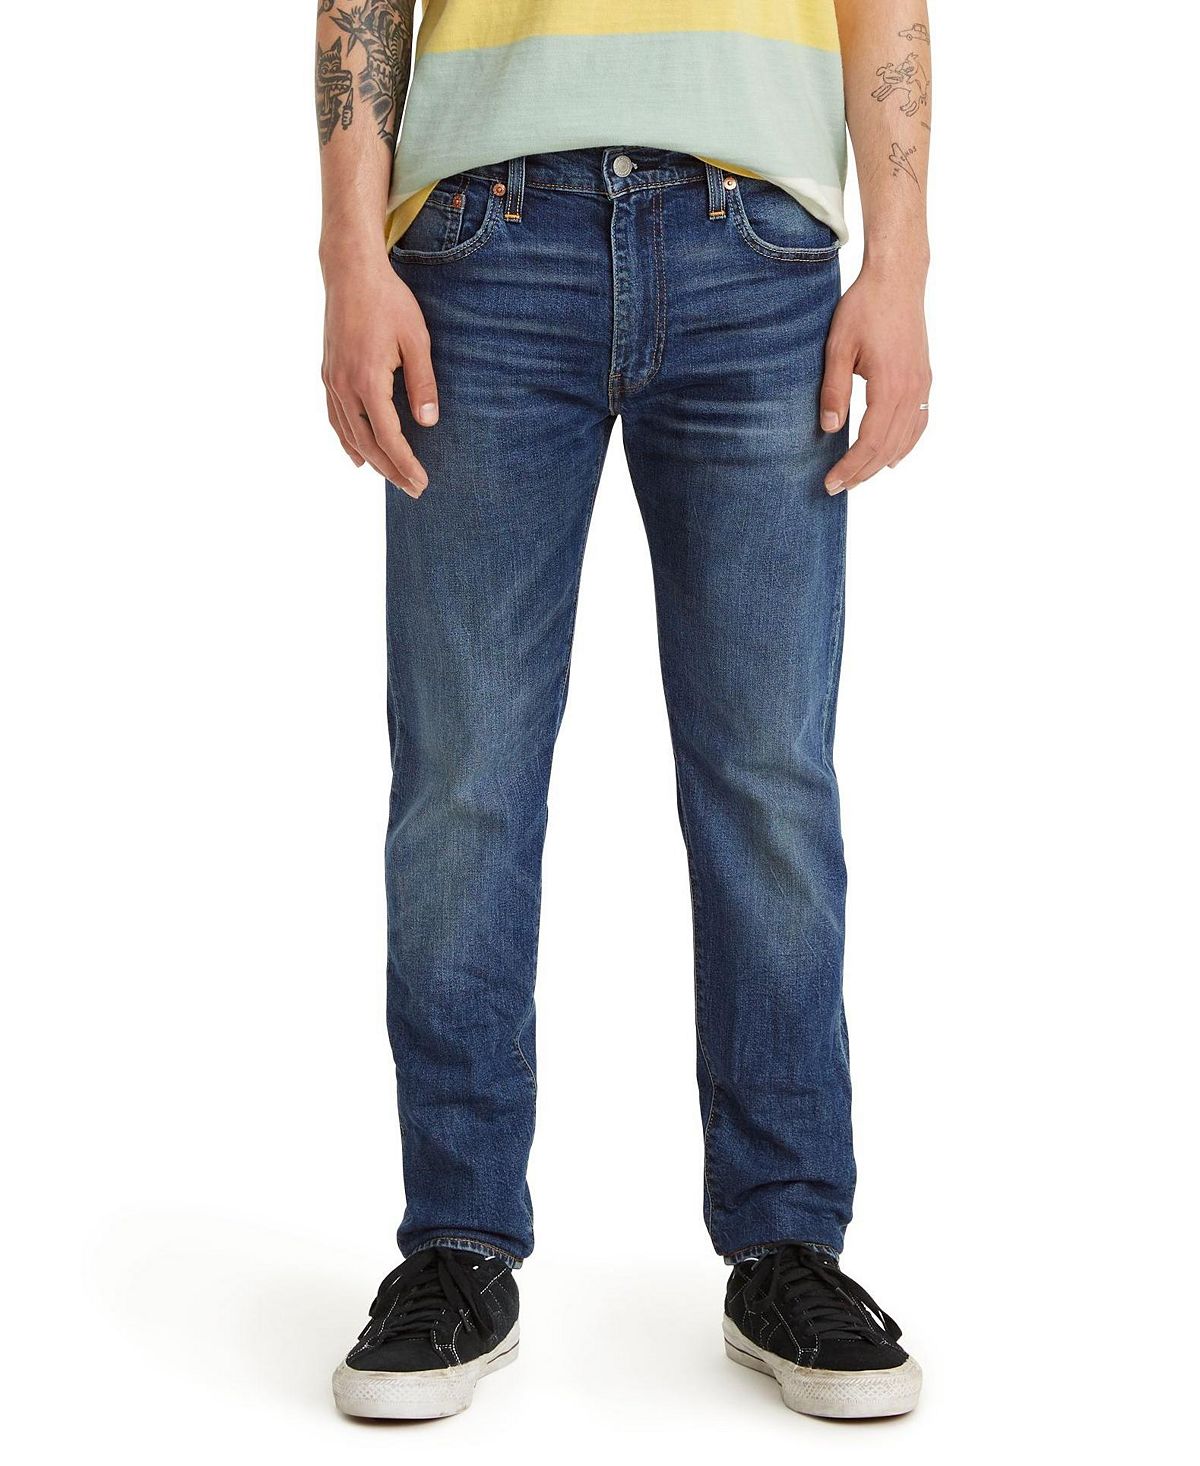 Мужские зауженные зауженные джинсы levi’s 512 flex Levi's, мульти узкие классические джинсы до щиколотки h